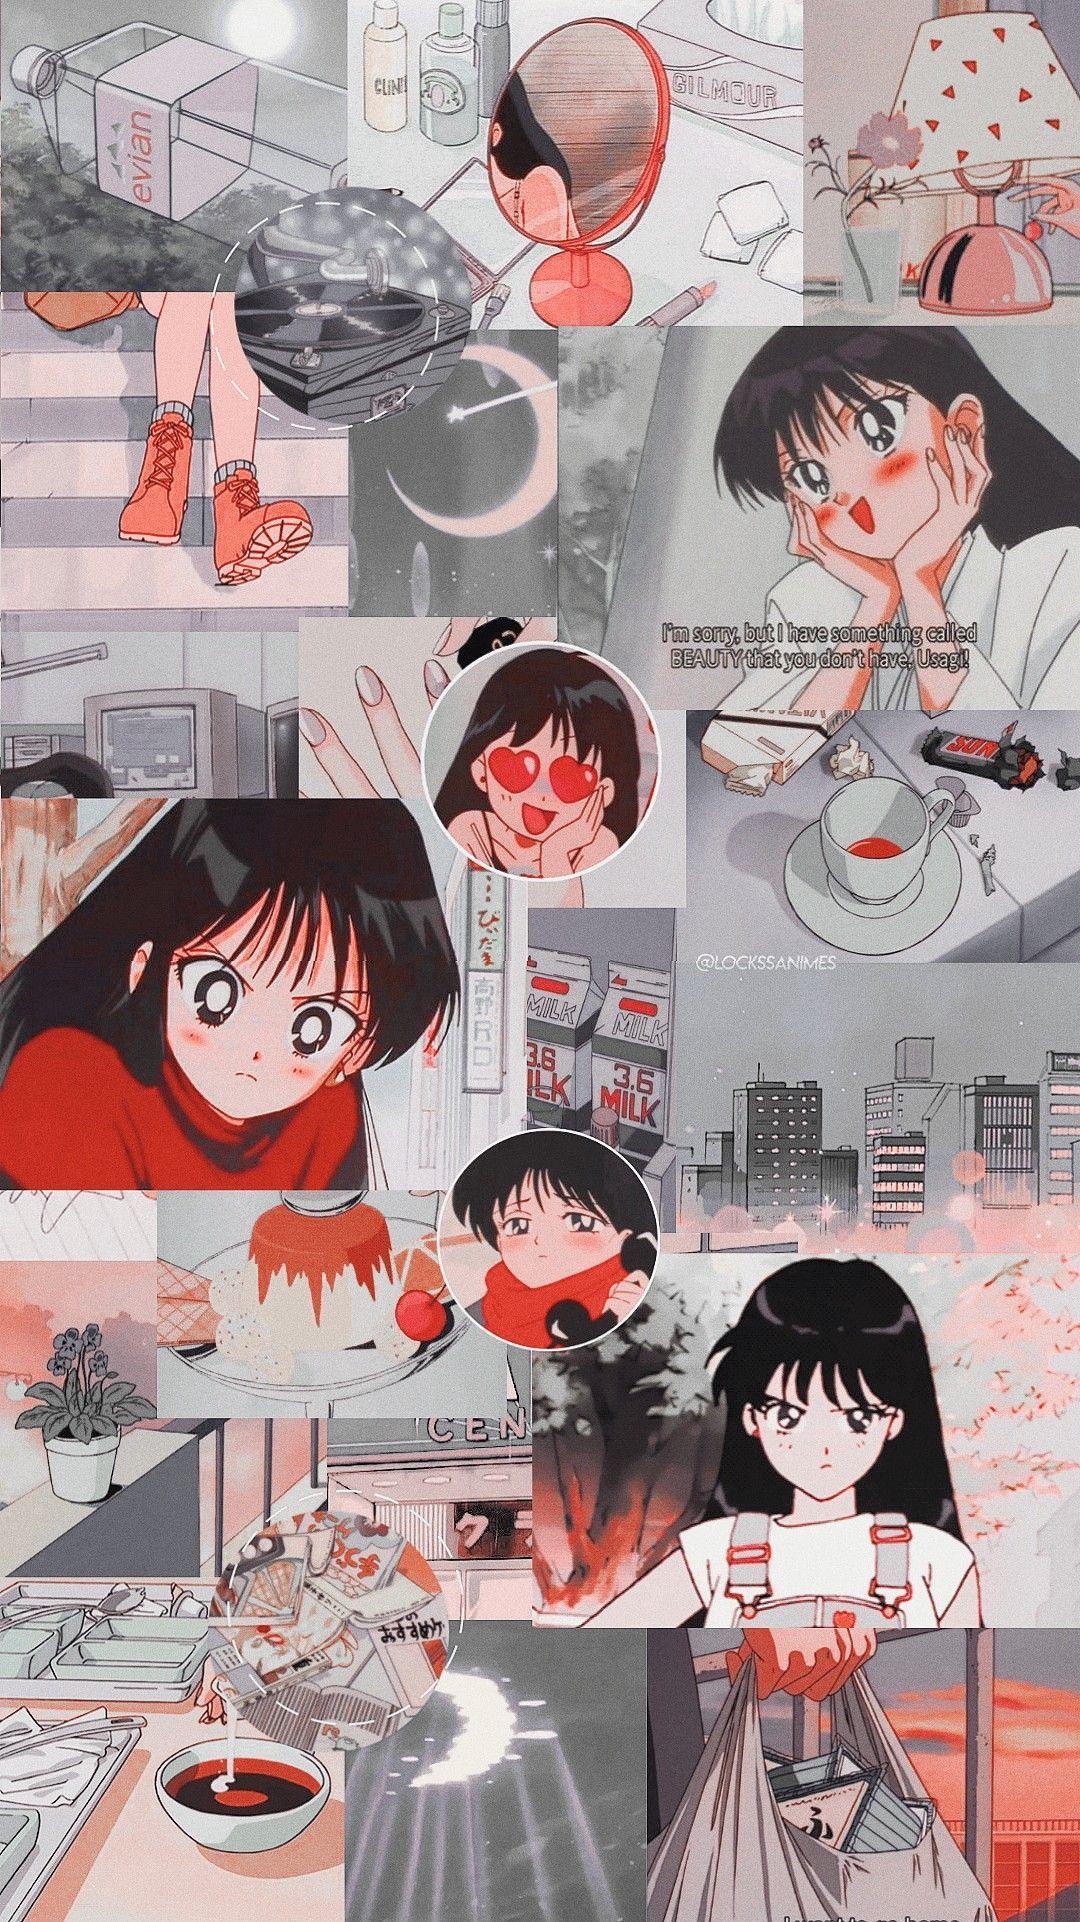 List of Best Aesthetic Anime Wallpaper IPhone Rei Hino. Anime wallpaper iphone, Aesthetic anime, Cute anime wallpaper